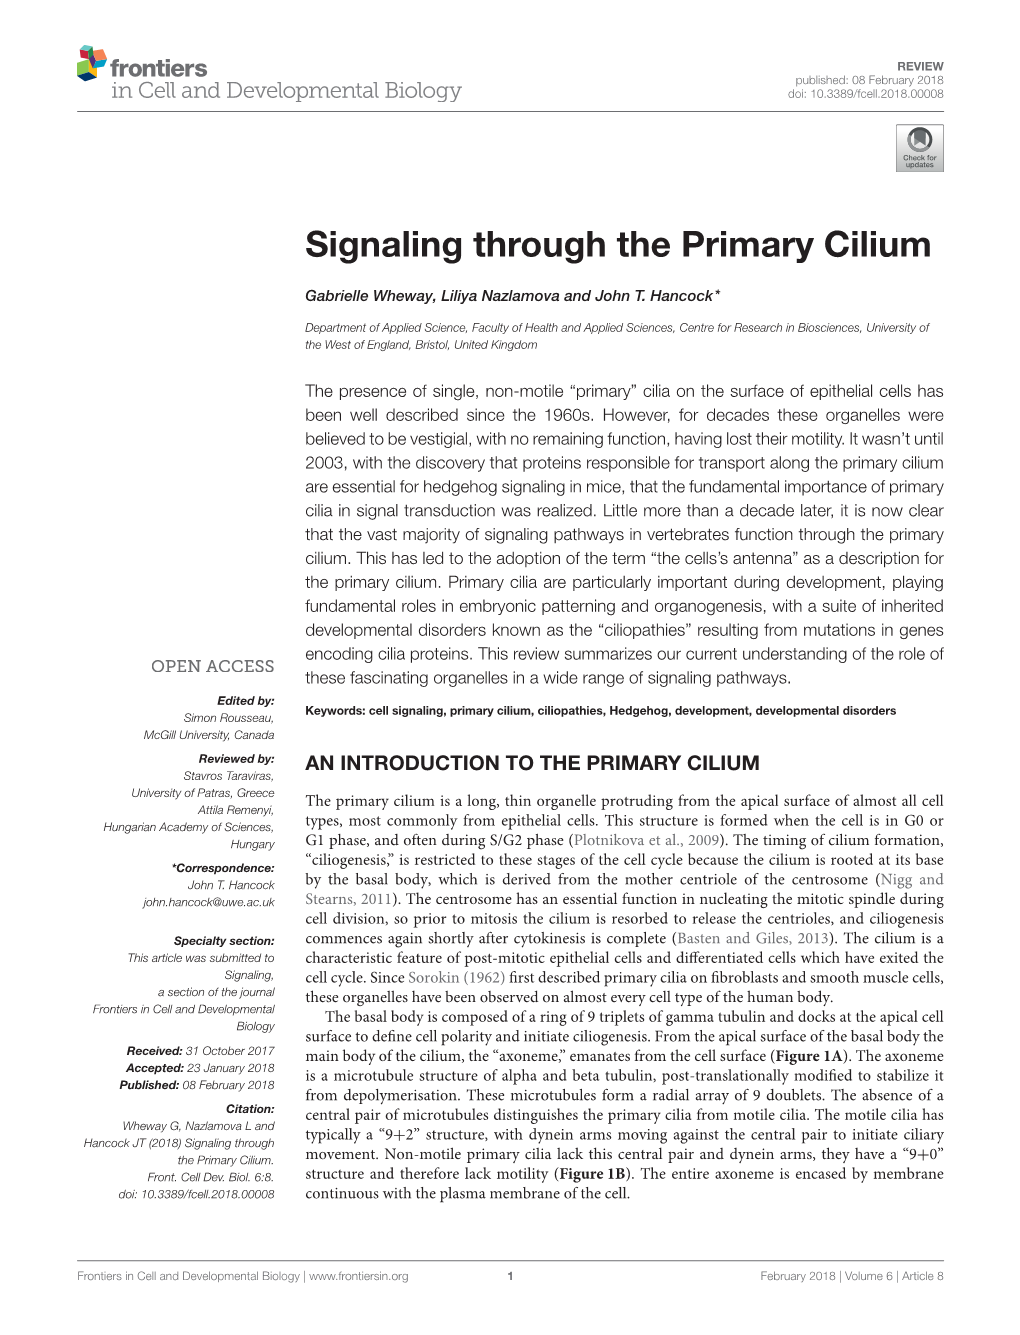 Signaling Through the Primary Cilium